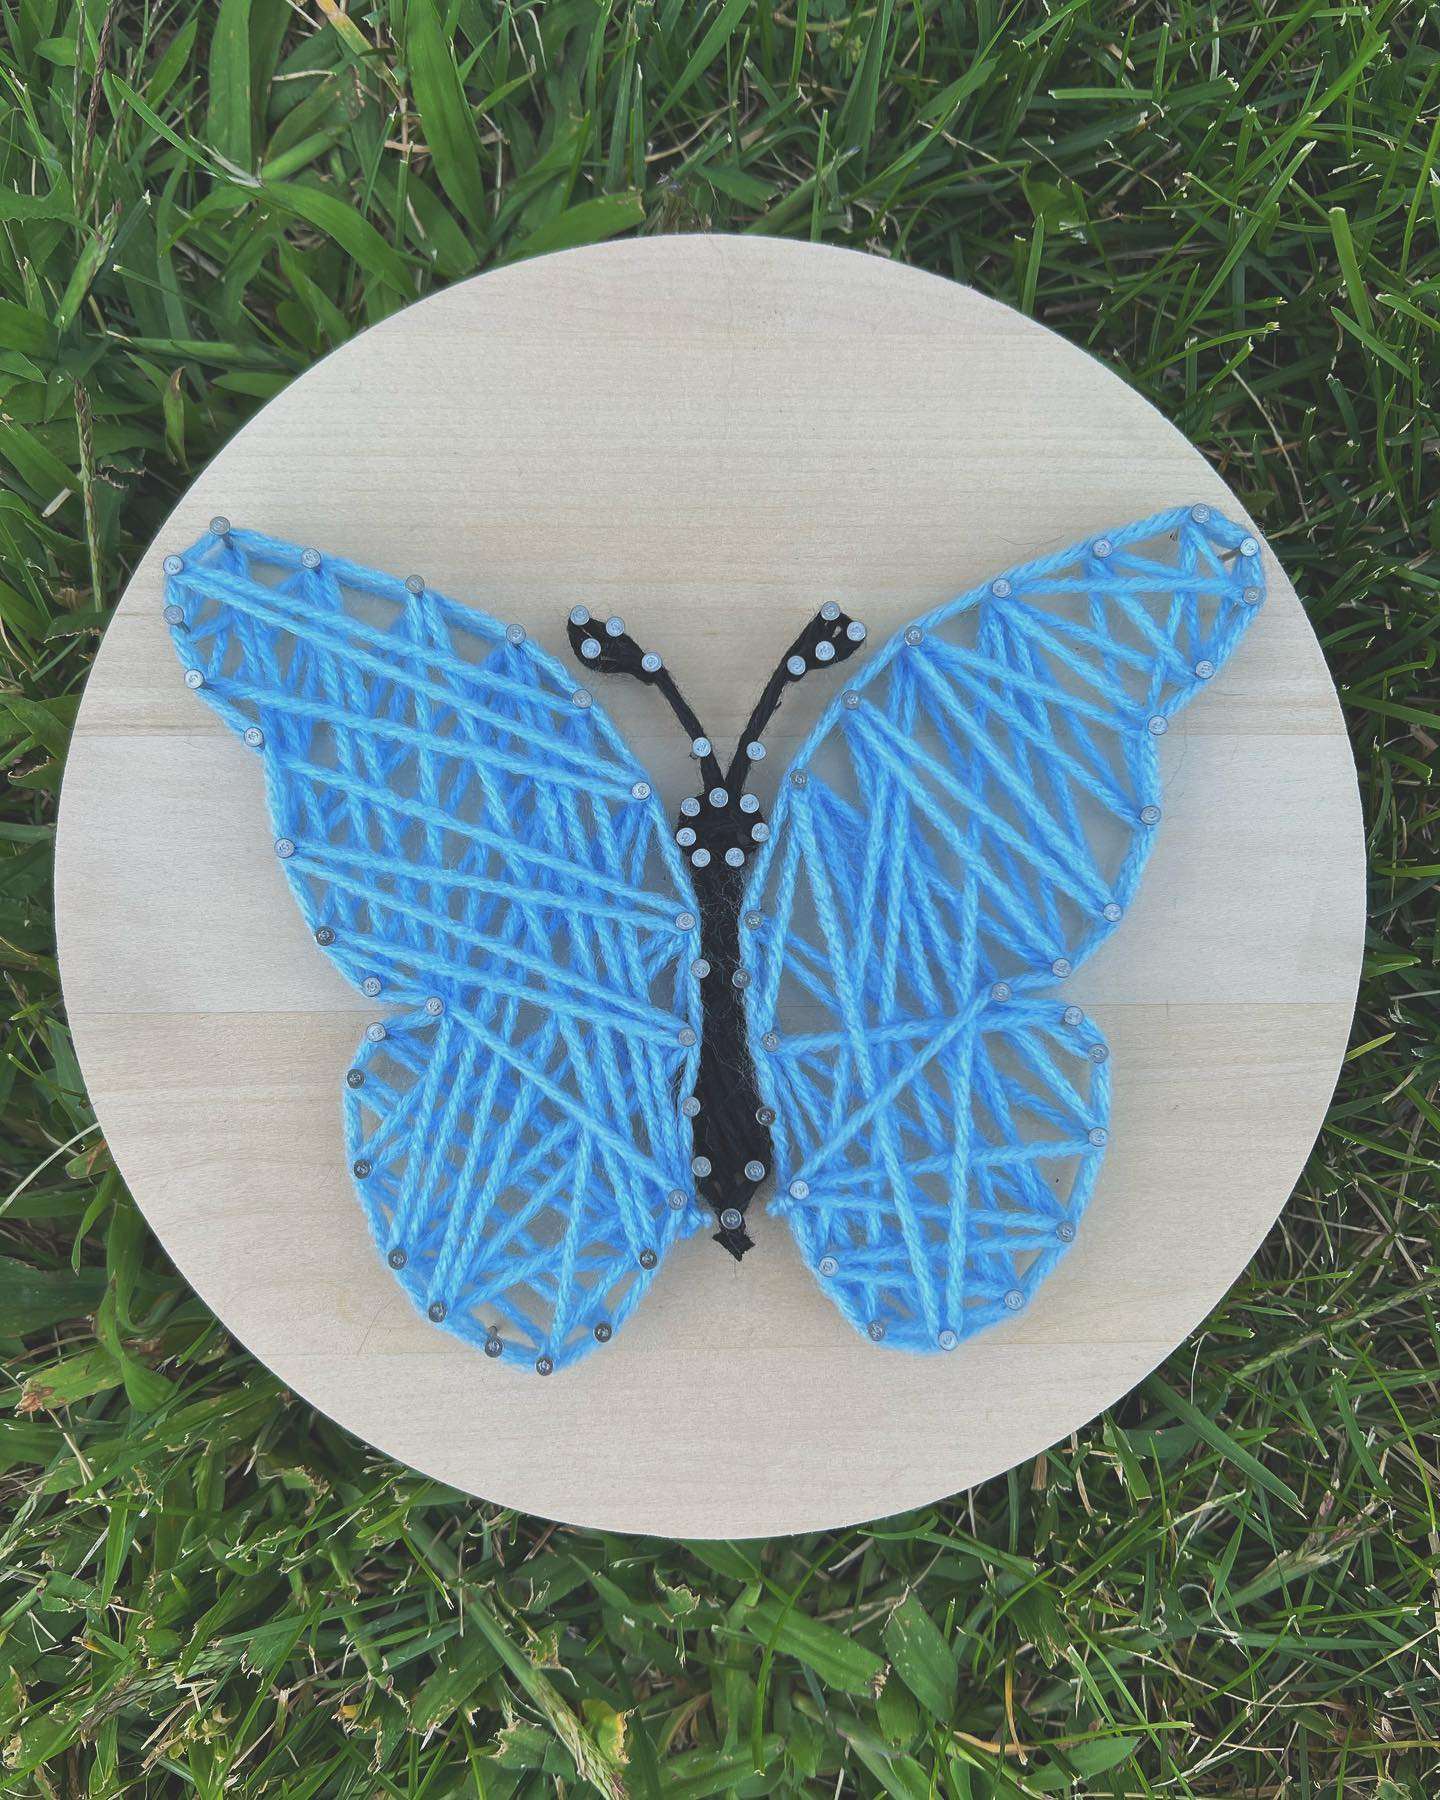 Butterfly String Art